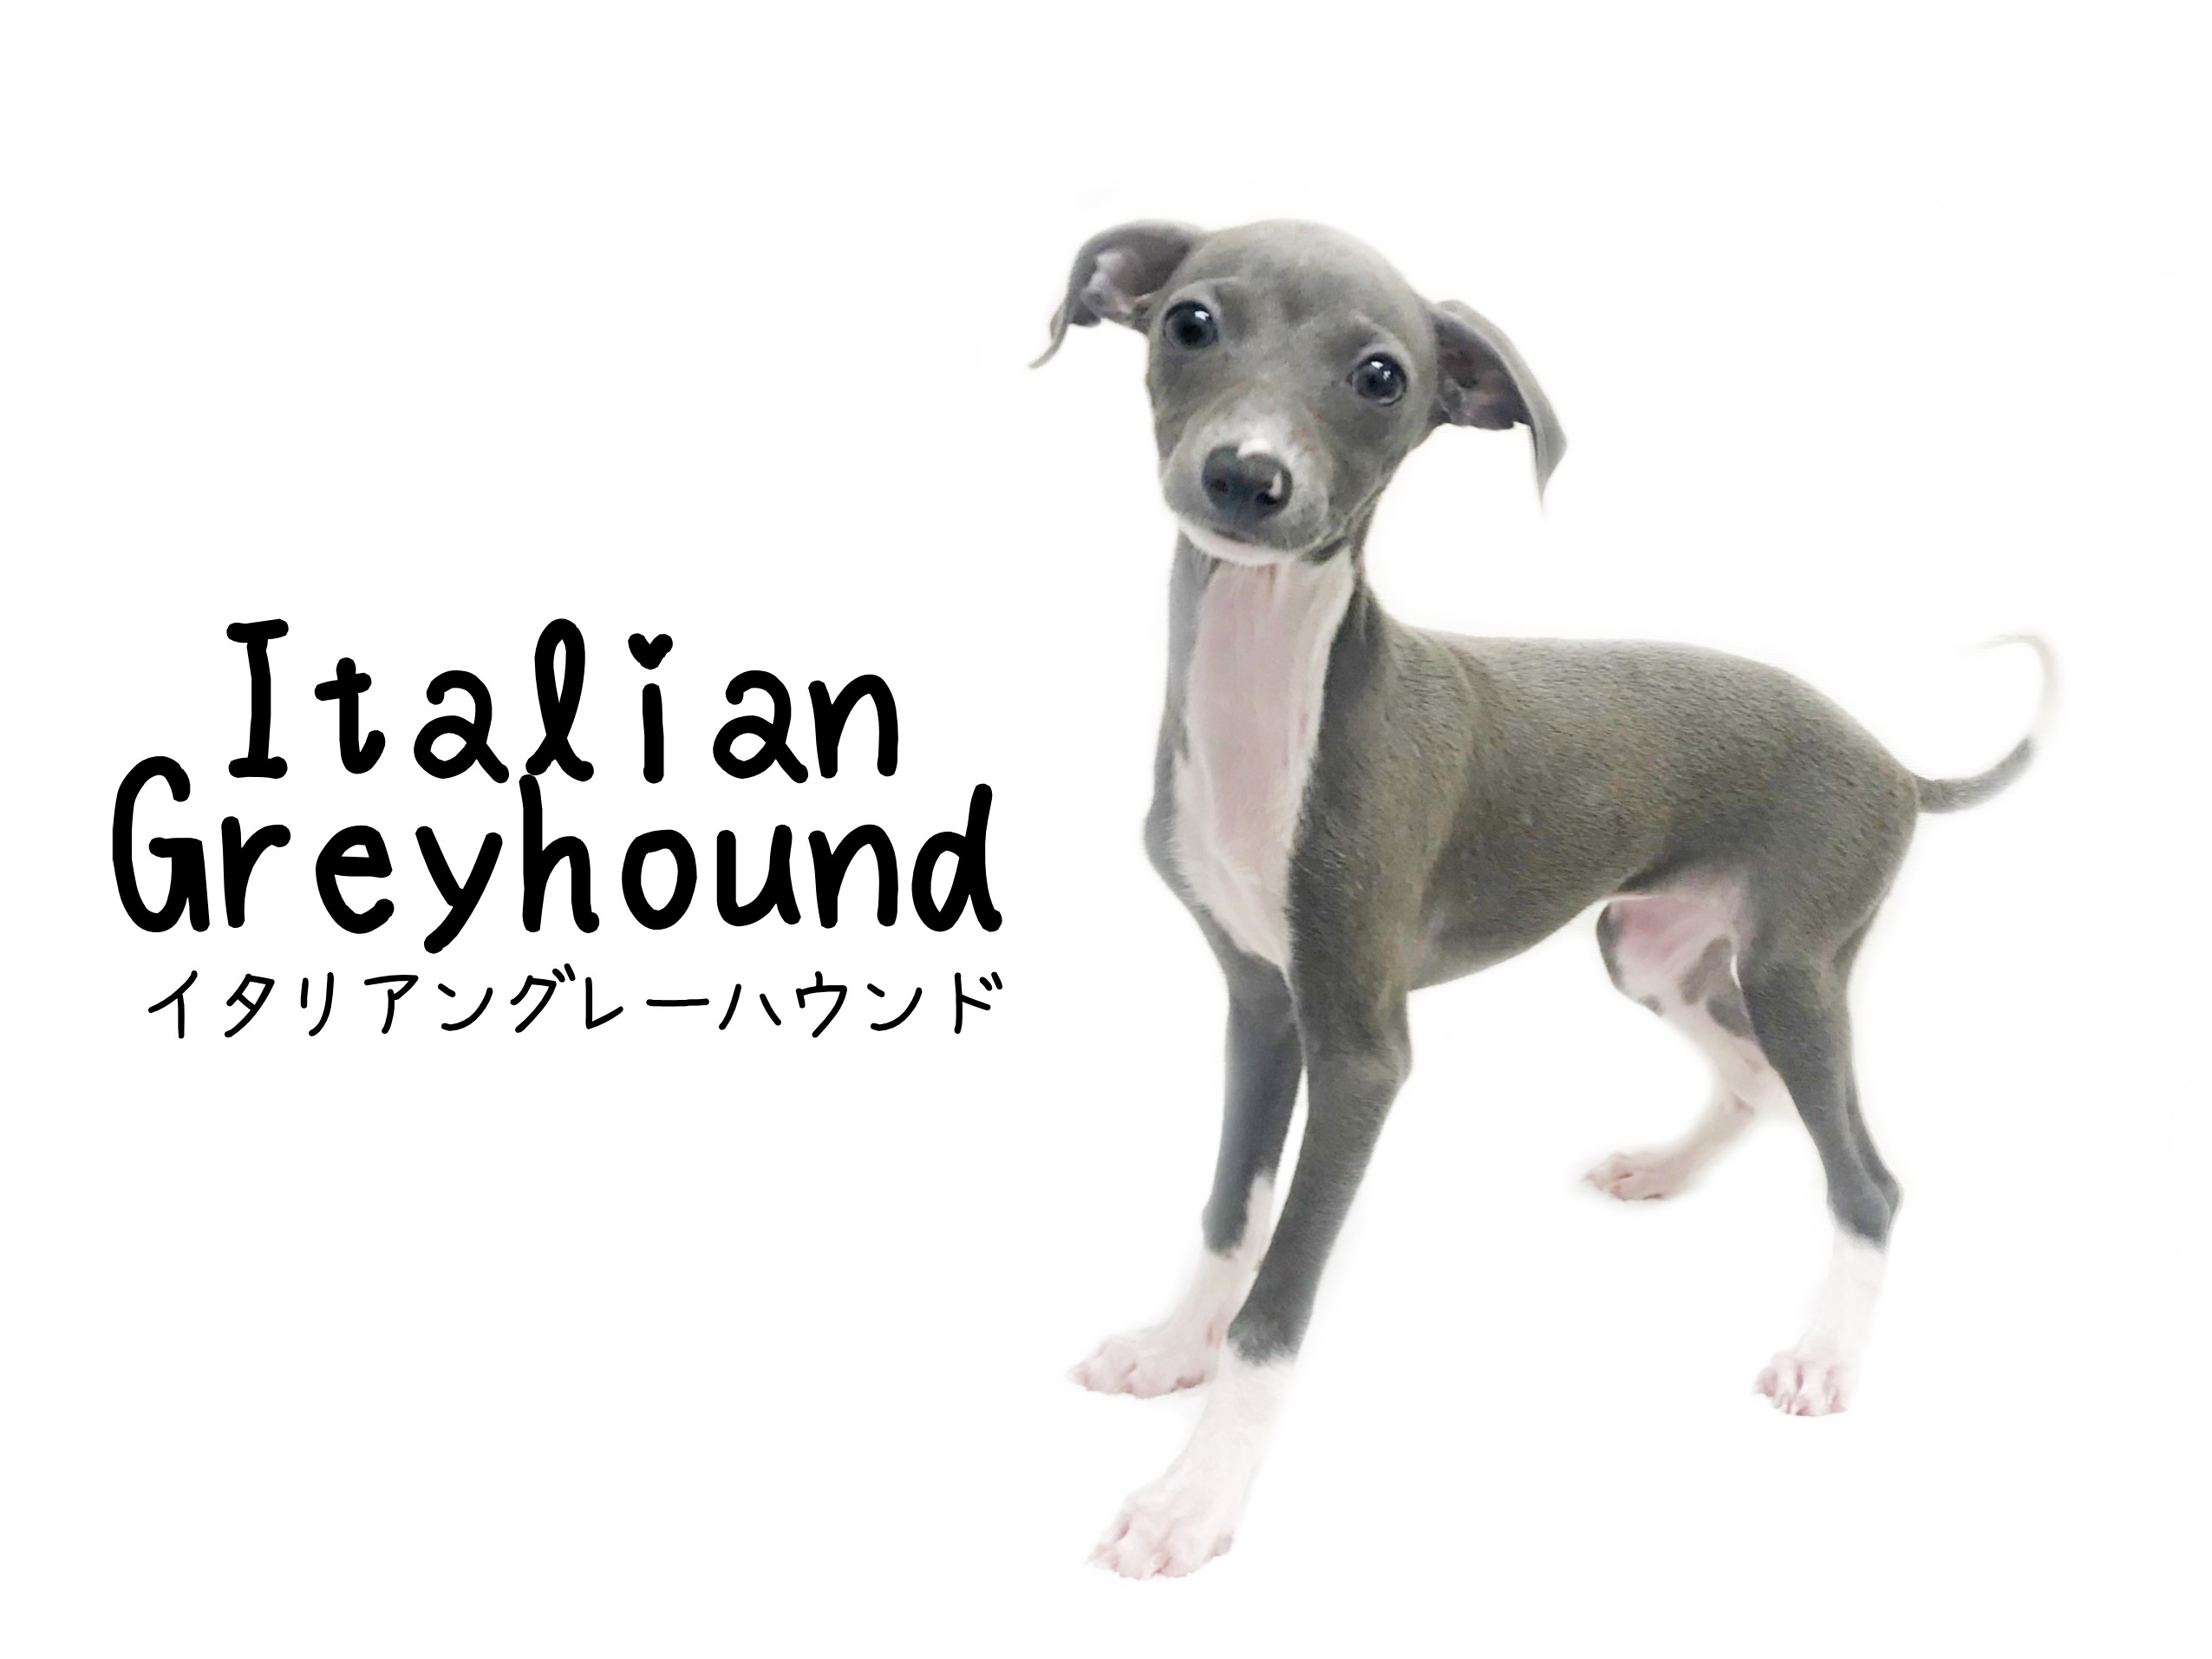 イタリアングレーハウンド 10秒あればあなたを虜にしてみせます マルワンblog ペットショップ マルワン 小さめ子犬 美形な子猫 初心者安心のサポート